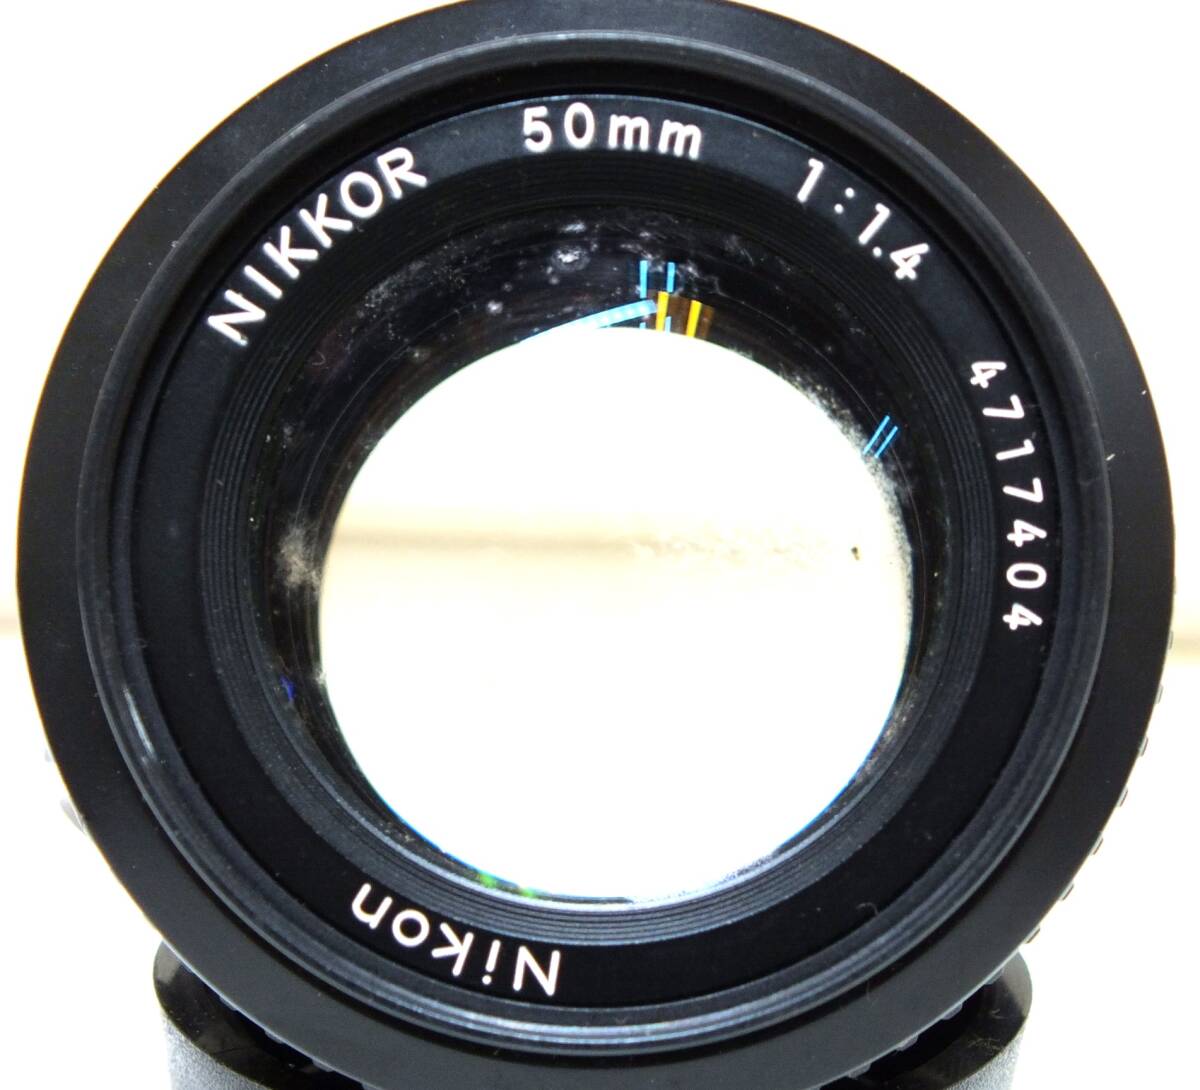 10K lucky bag LENS lens NIKON NIKKOR F Nikkor 50mm 1:1.4 35mm 1:2.8 55mm 1:3.5 Ai lens 3 point summarize 1 jpy start 